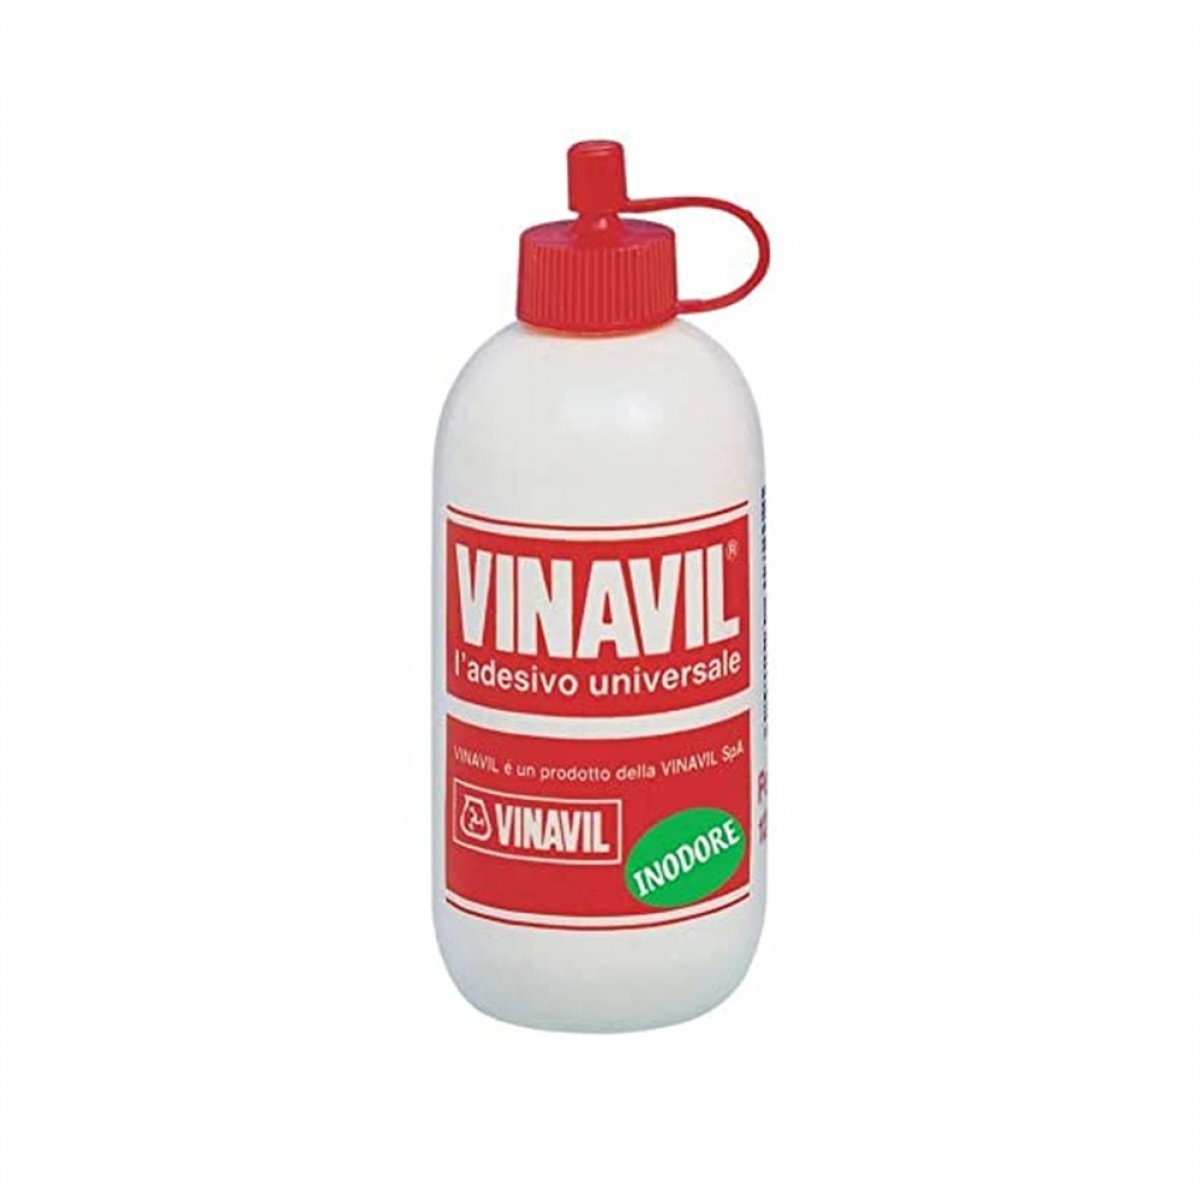 Colla Vinilica Vinavil Universale, Senza solventi, inodore, trasparente dopo l’essiccazione. 250g Bianco VINAVIL